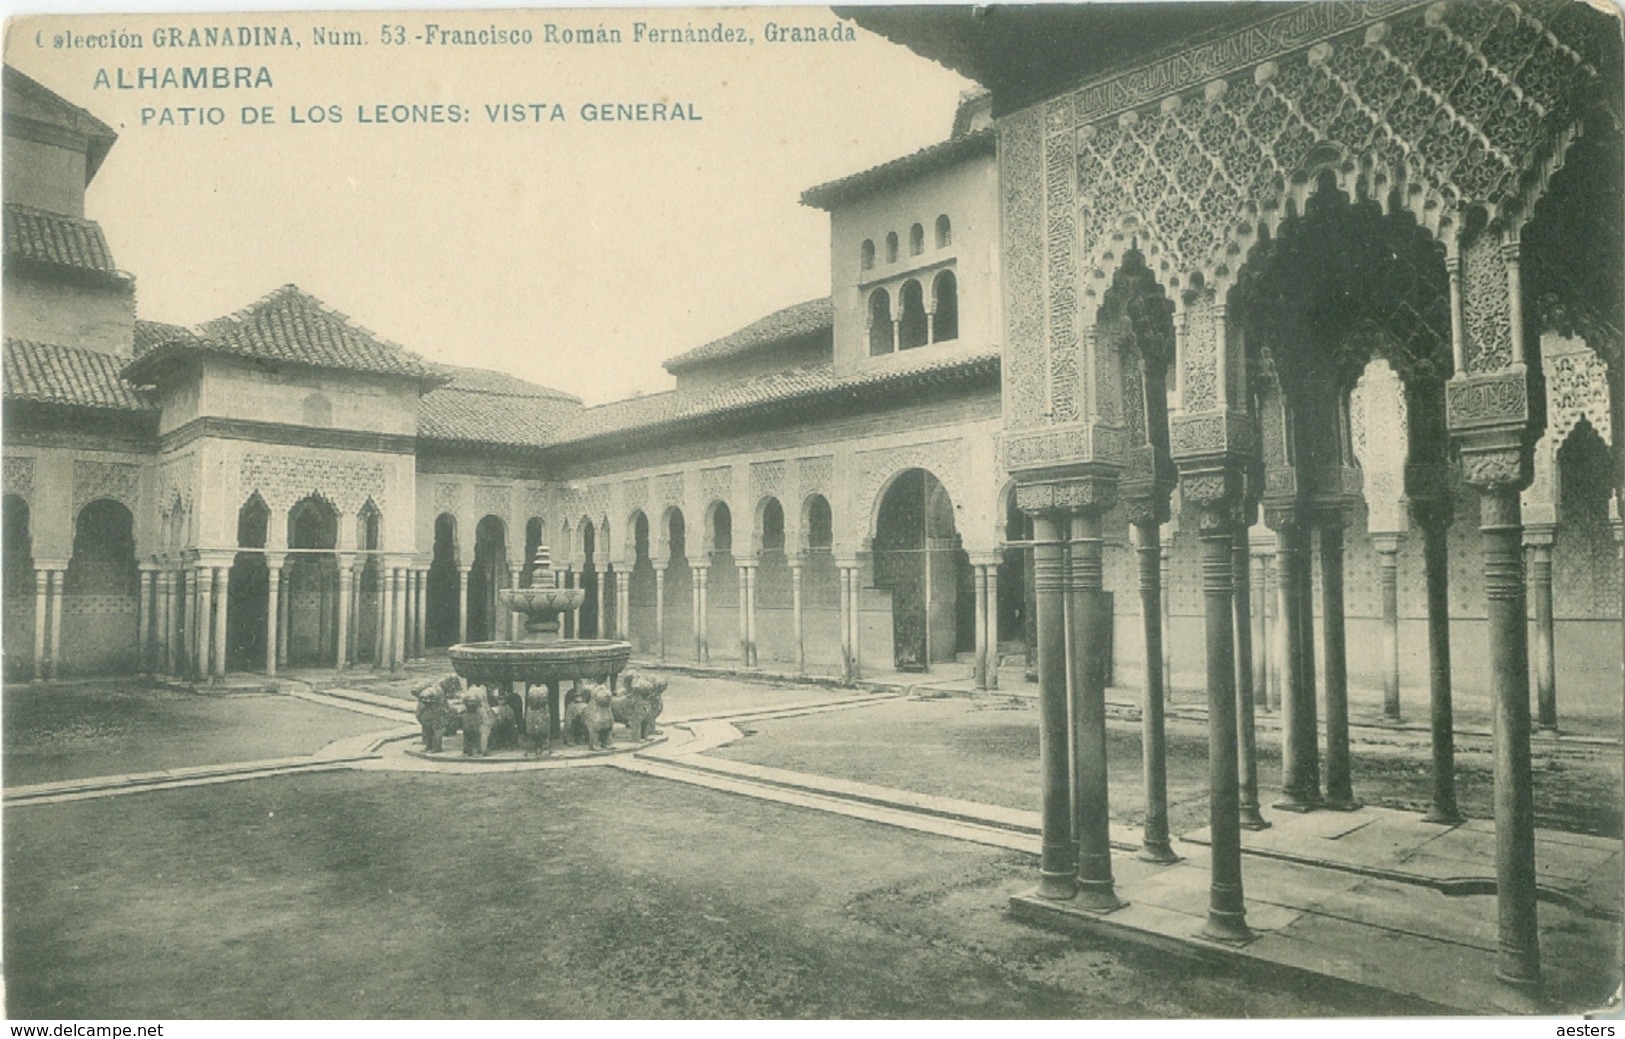 Granada; Alhambra. Patio De Los Leones. Vista General - Not Circulated. (Francisco R. Fernández - Granada) - Granada